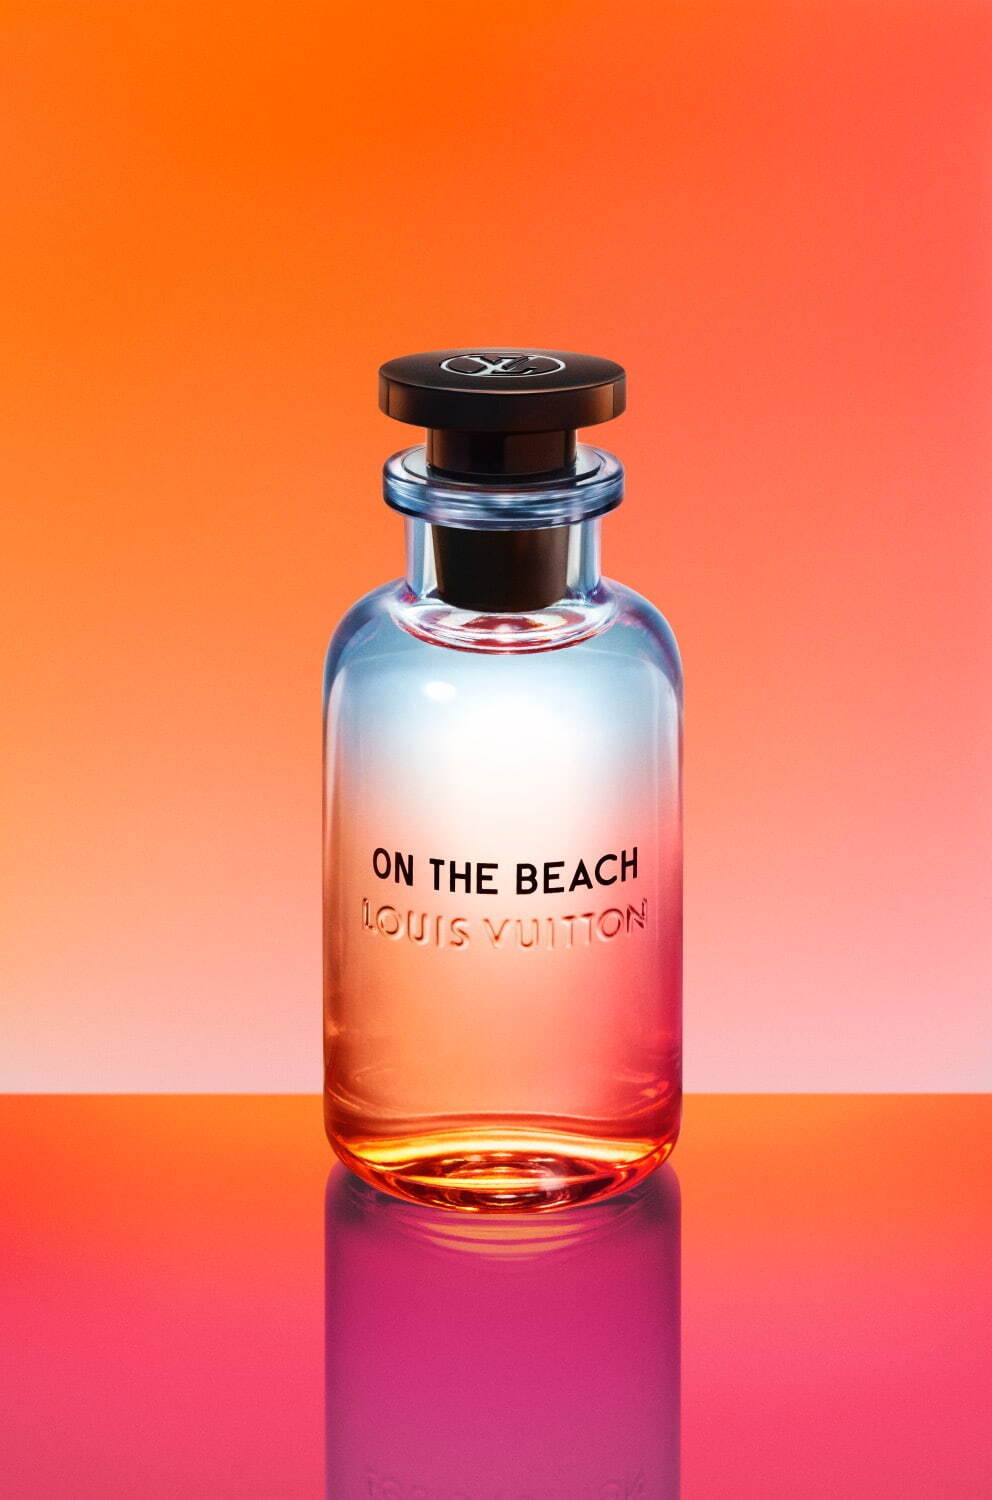 ルイ ヴィトン 夏のビーチ 着想のユニセックス香水 オン ザ ビーチ 明るく香る柚子 ネロリ ファッションプレス